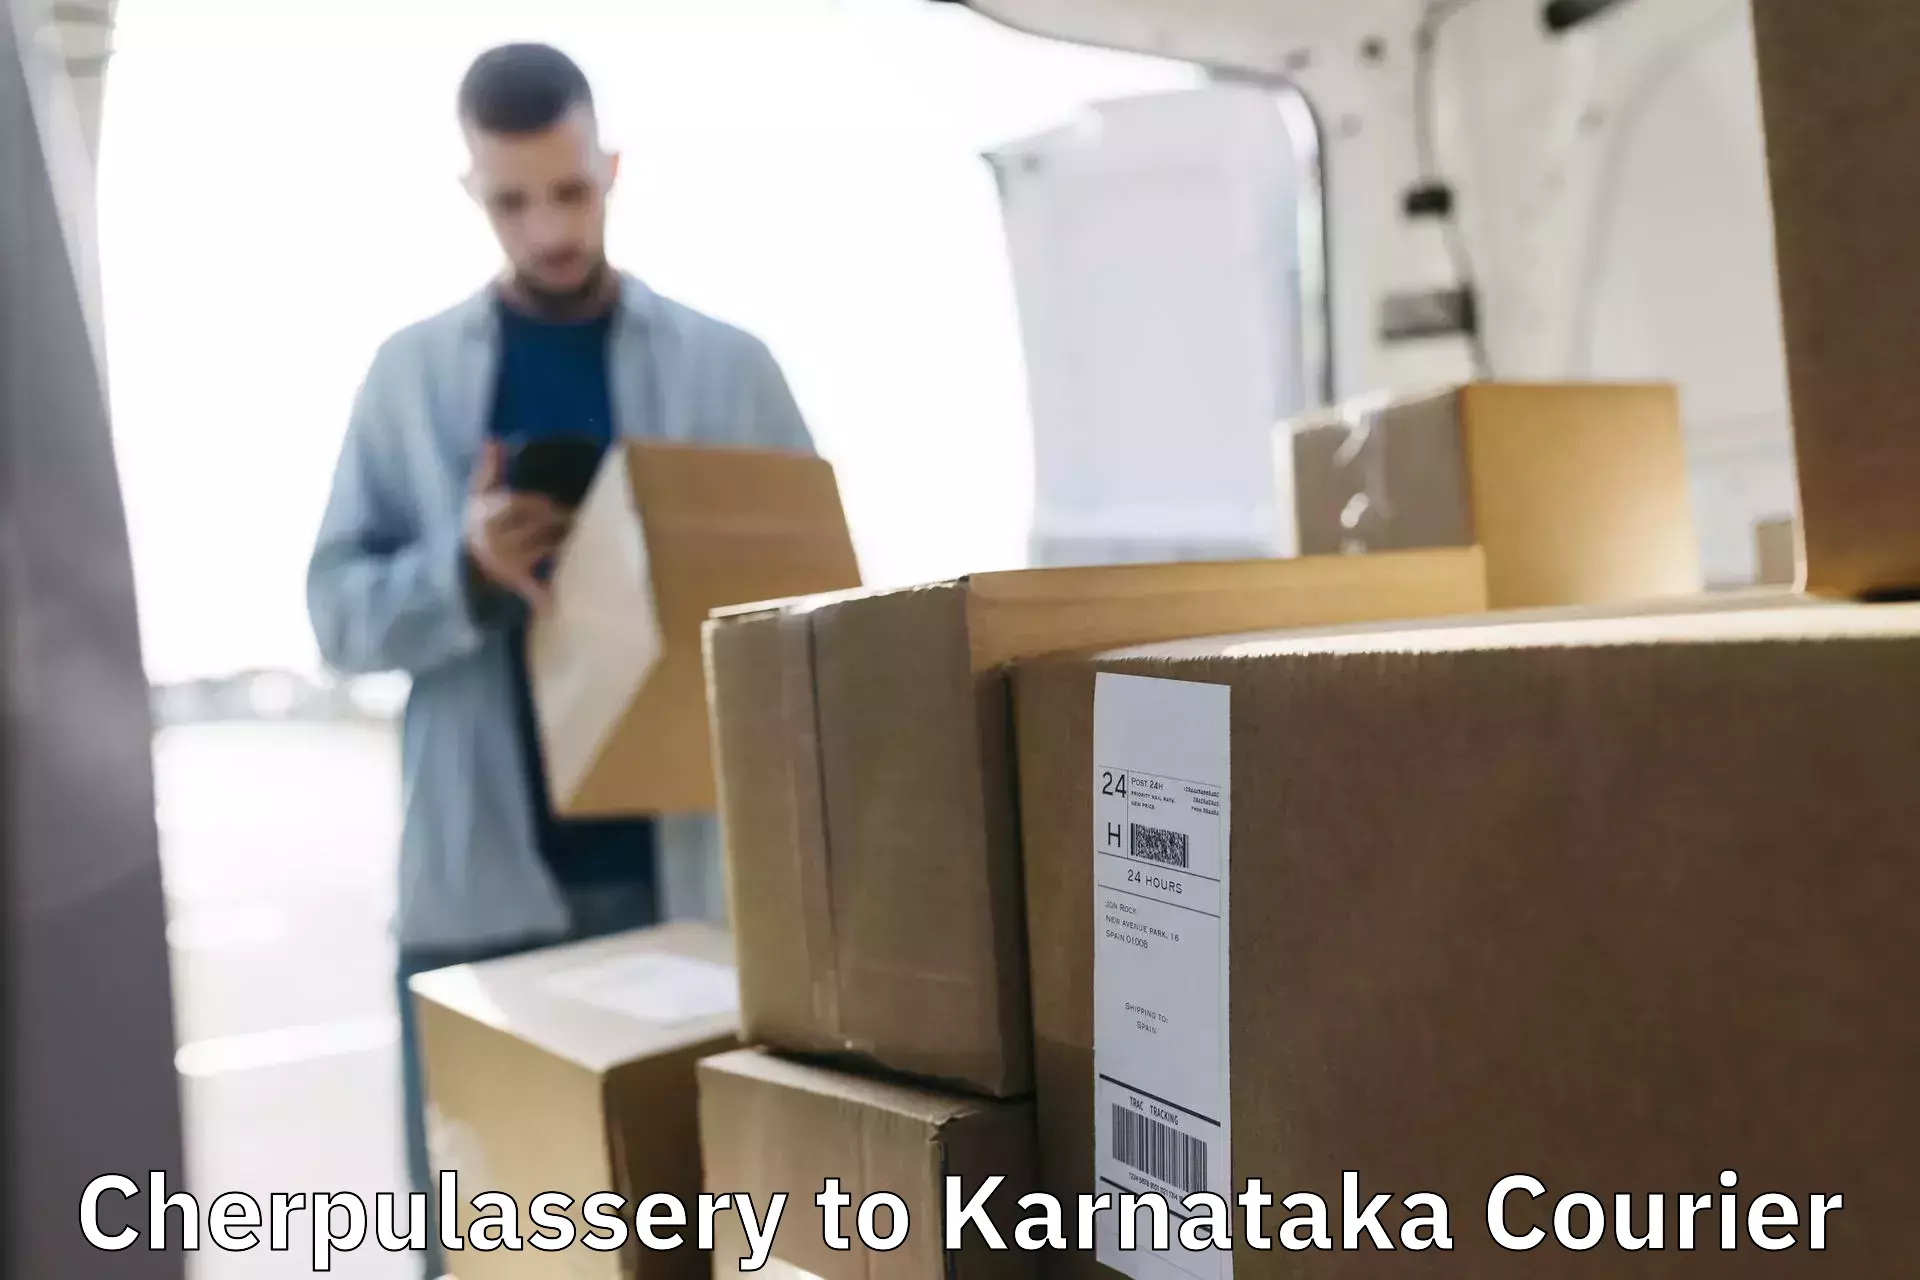 Customer-focused courier Cherpulassery to Yenepoya Mangalore